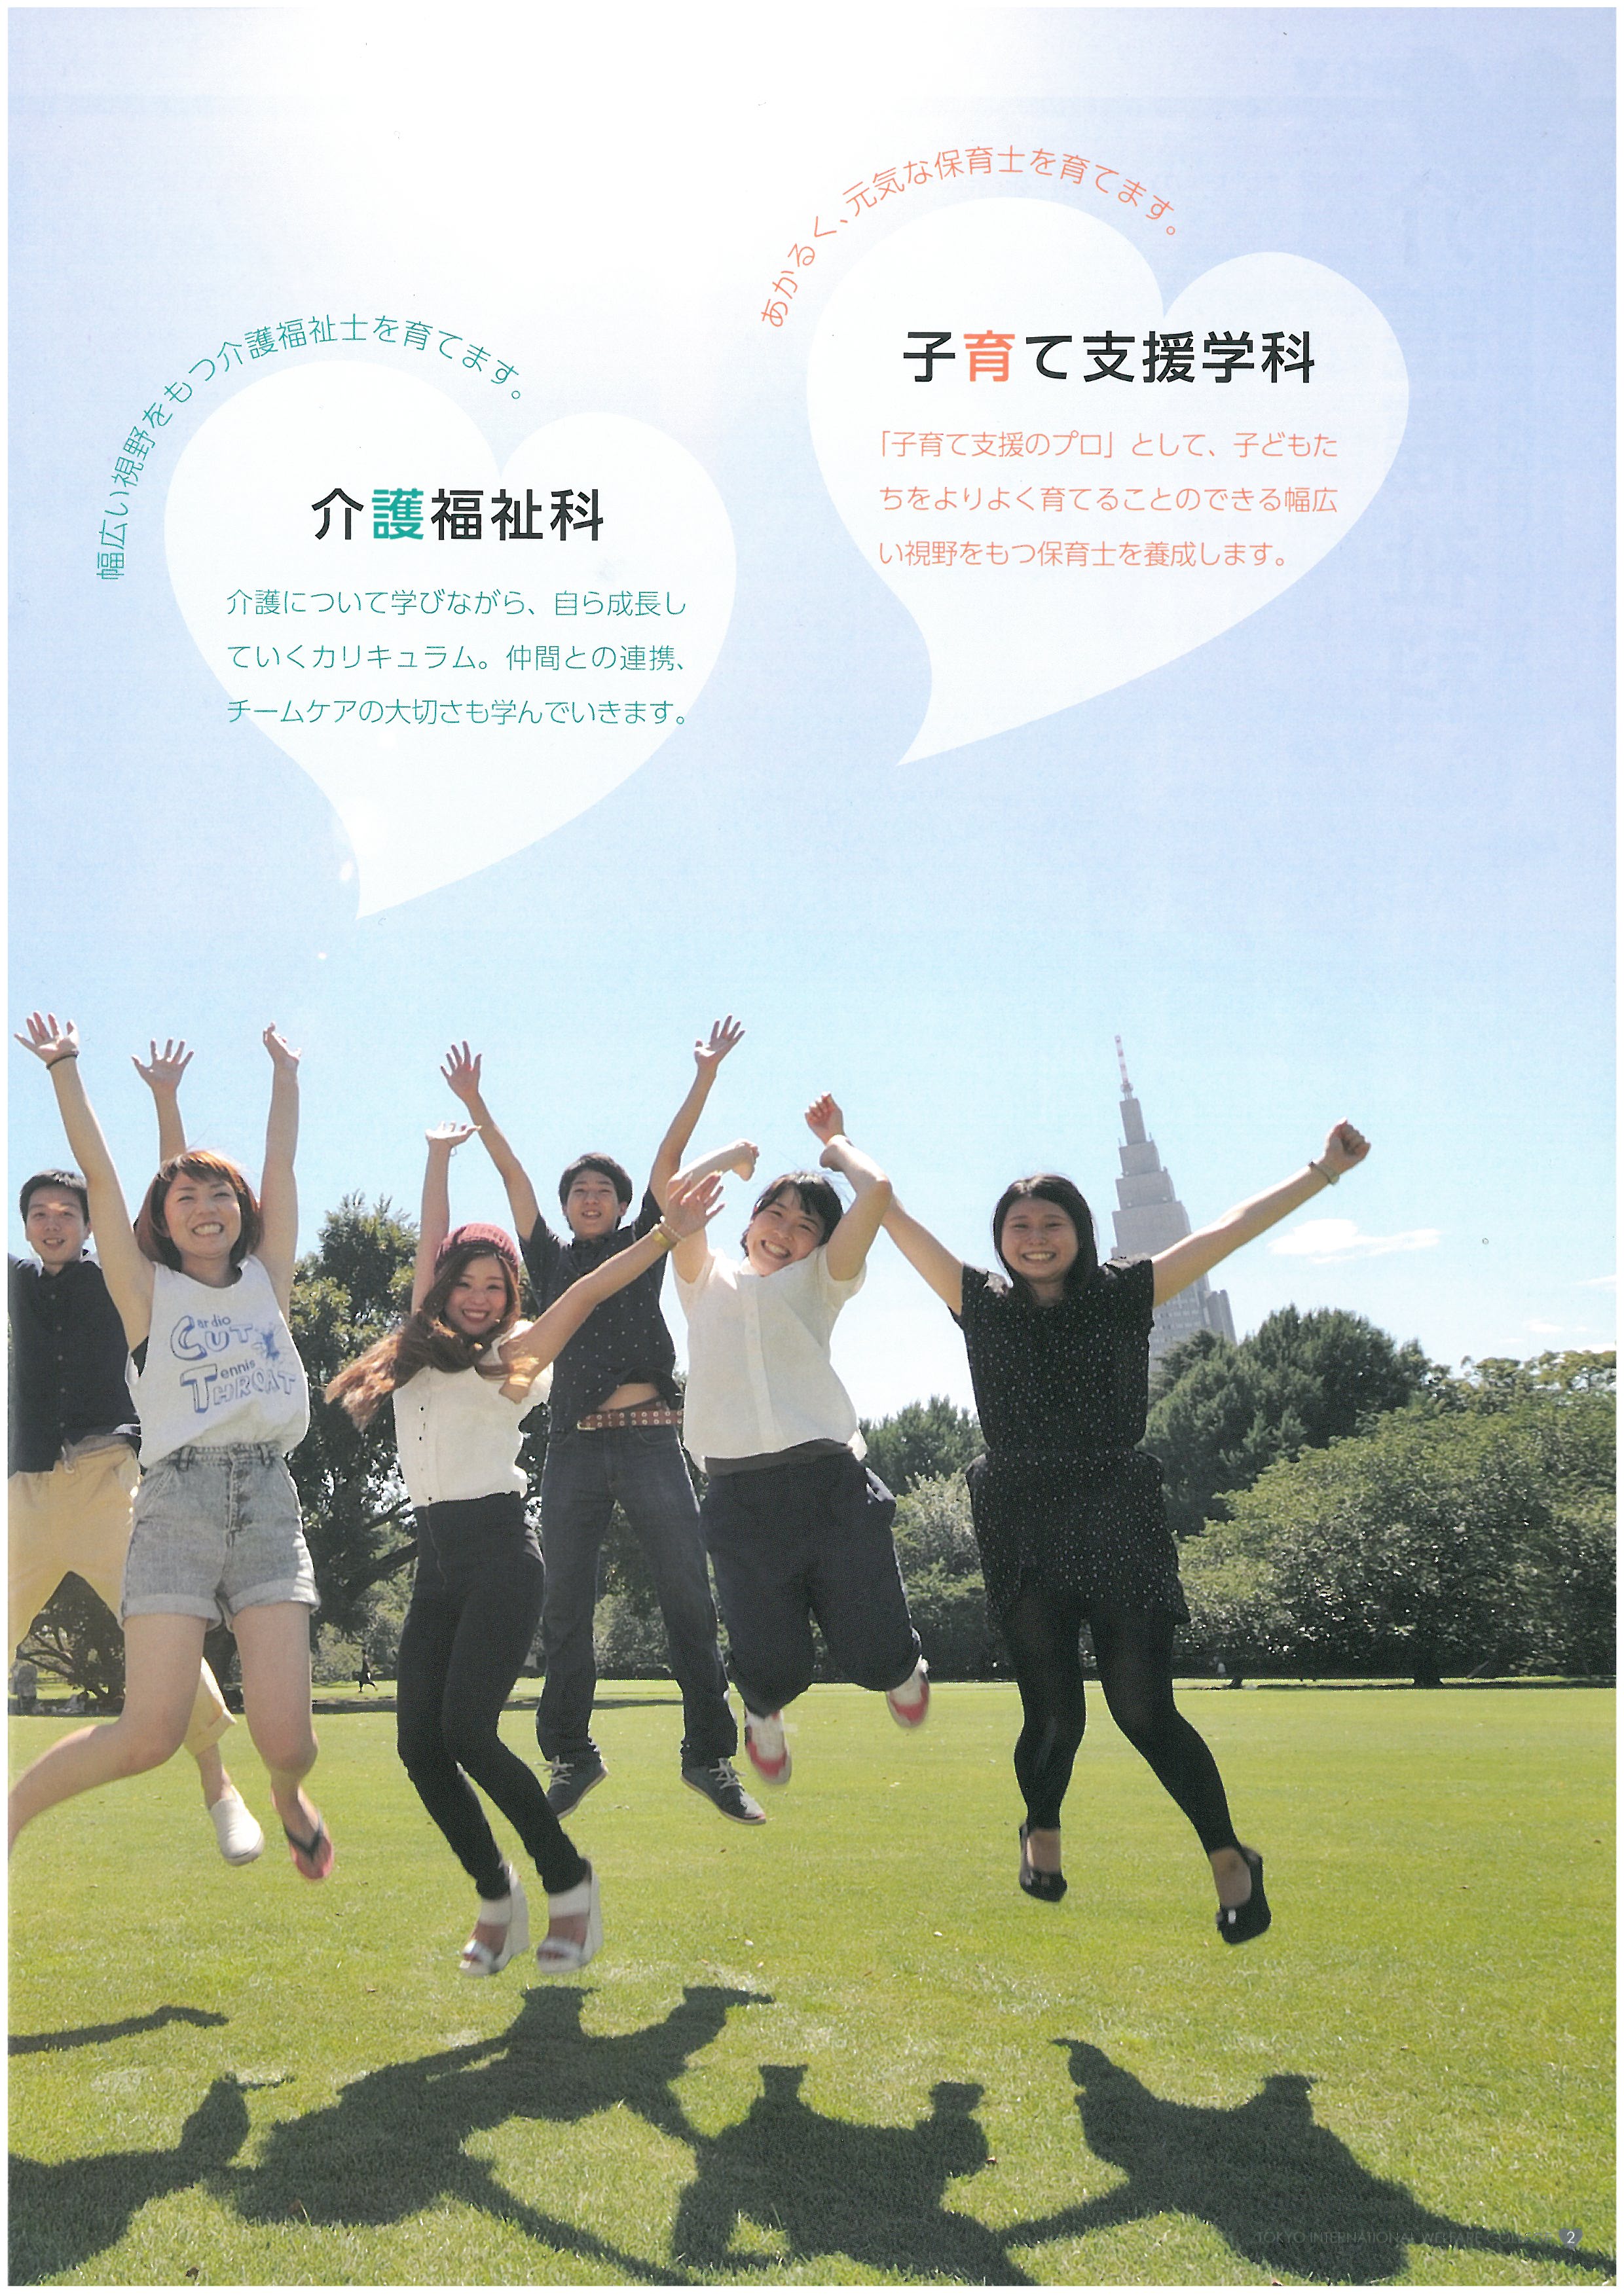 도쿄 국제복지전문학교 홍보 팜플렛 03.jpg